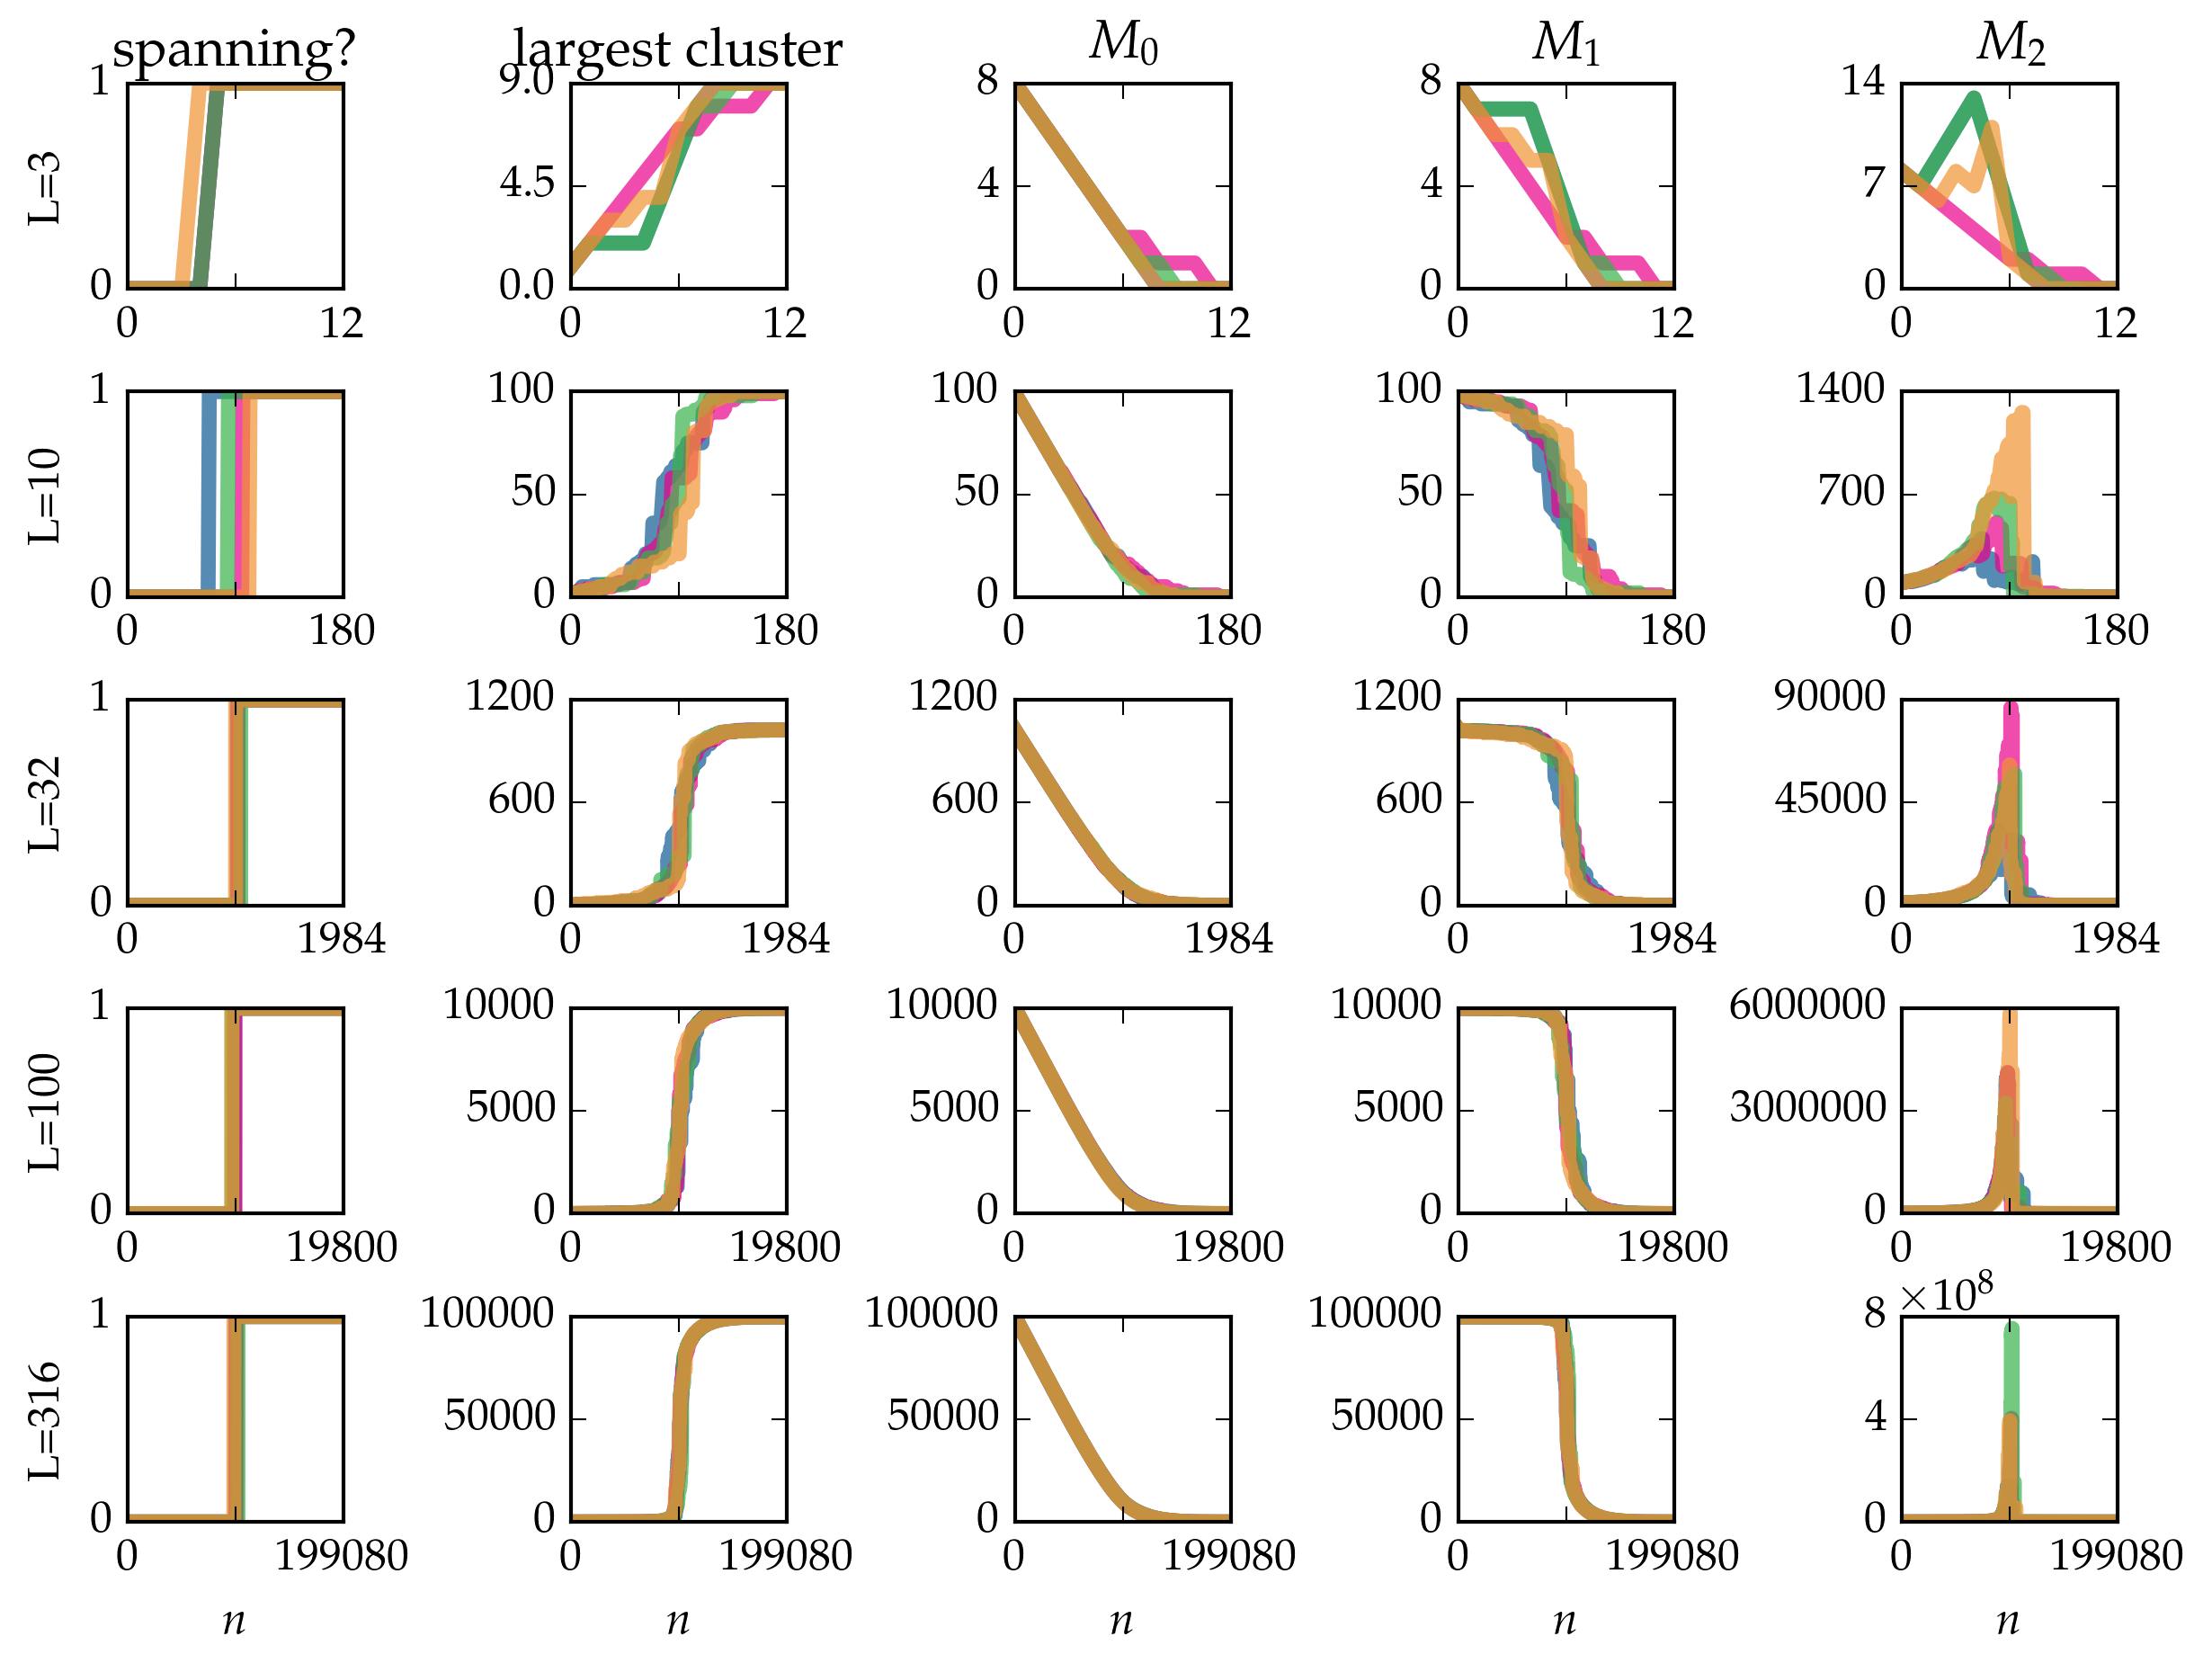 _images/tutorial-bond-square-lattice_29_0.png